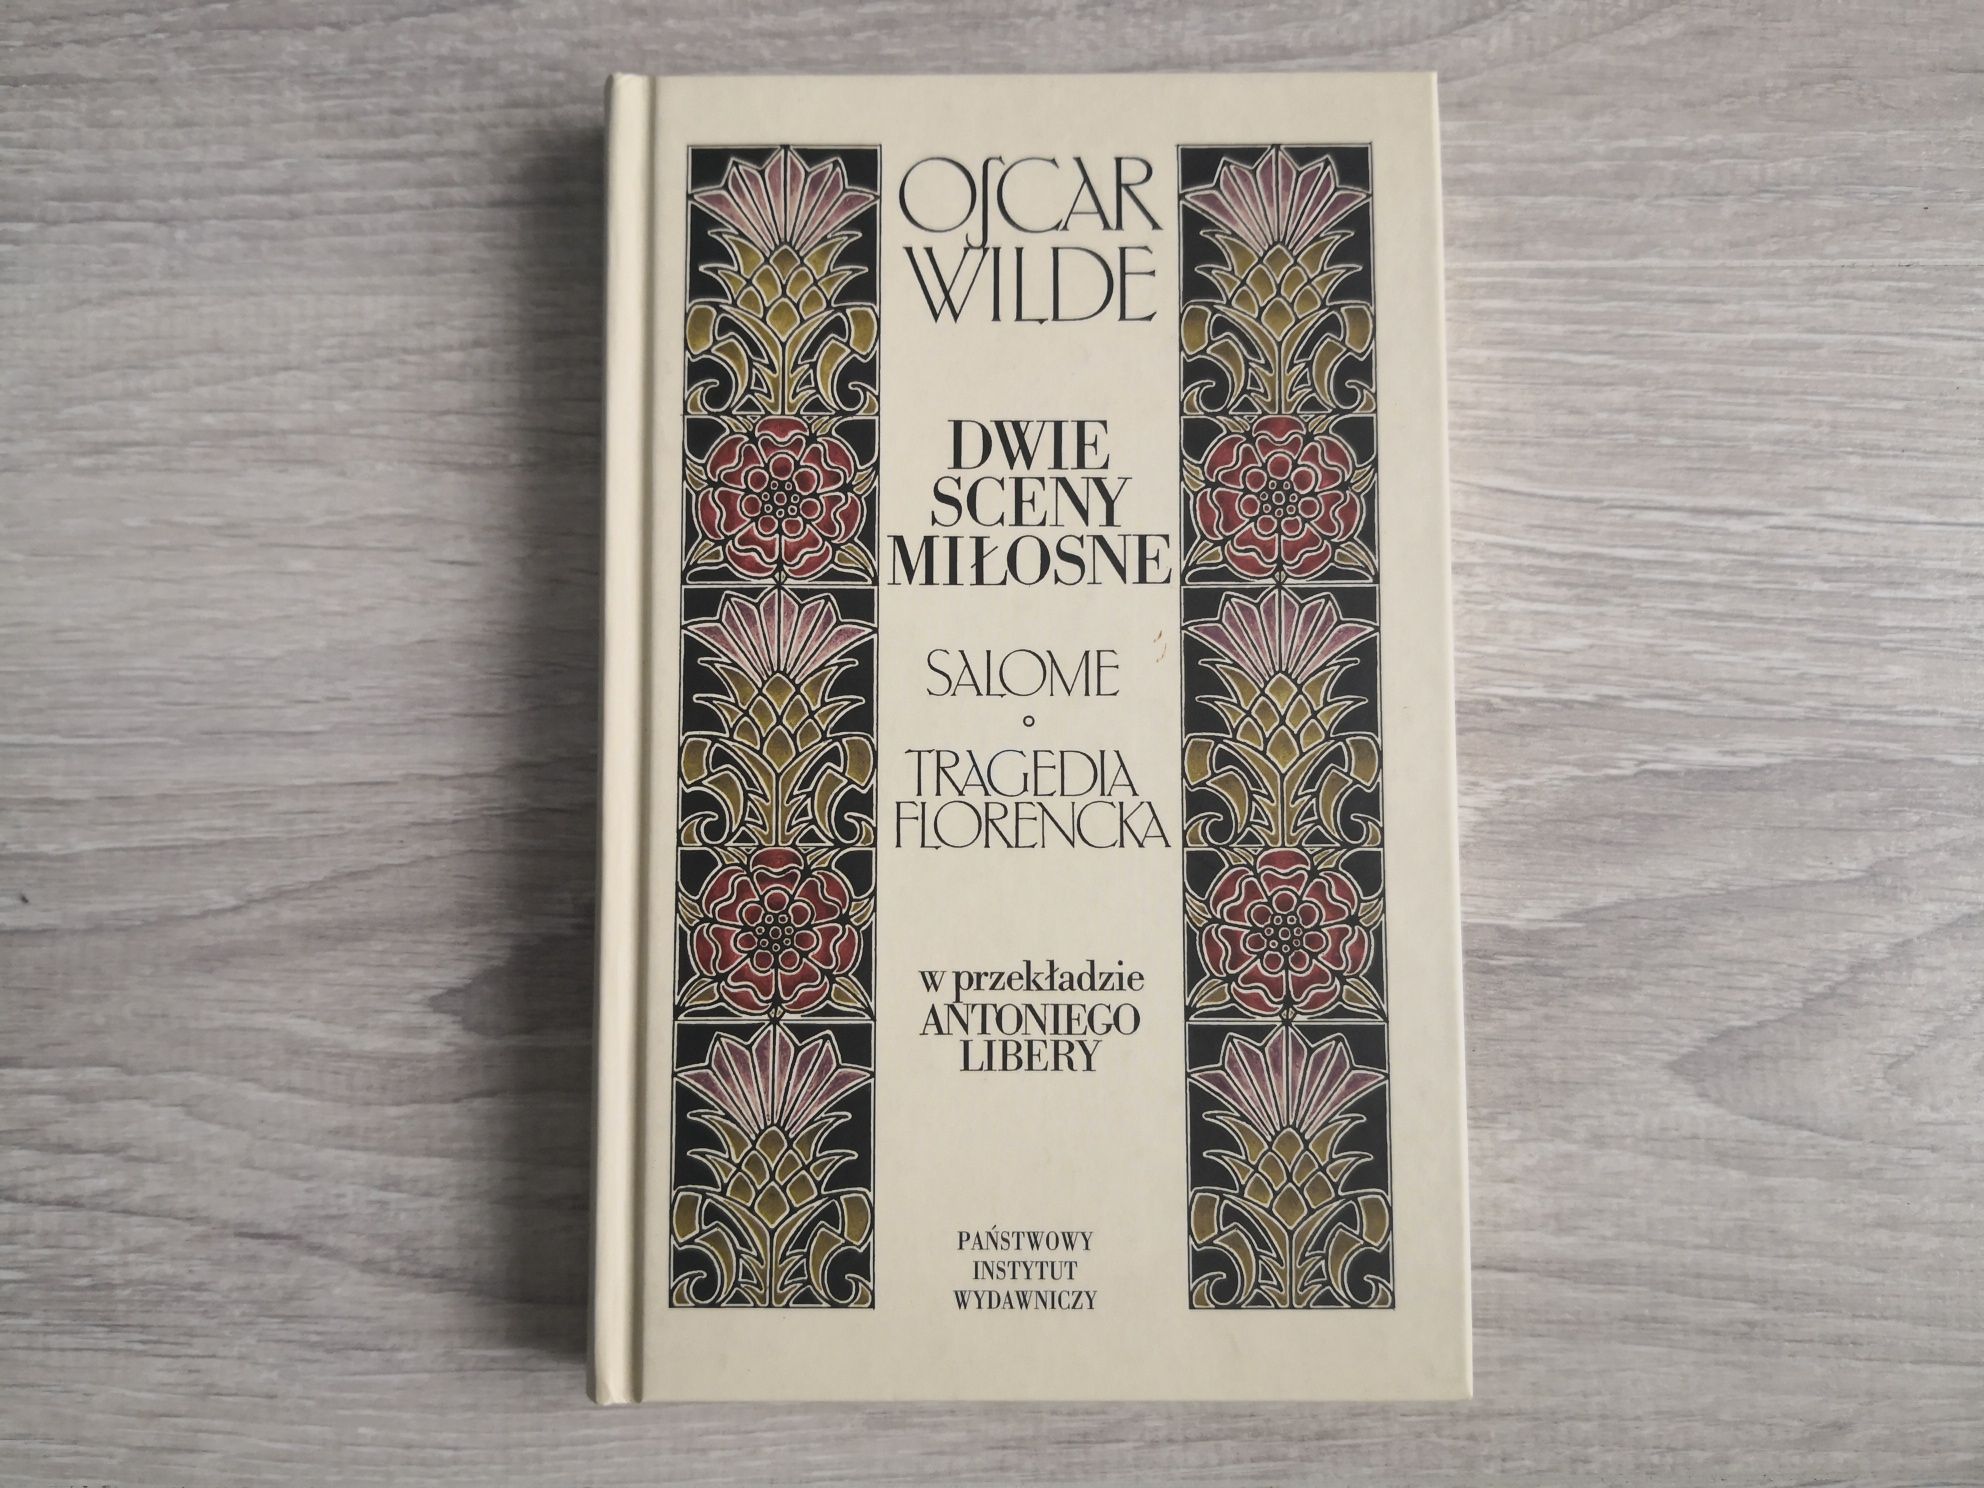 Oscar Wilde : Dwie sceny miłosne : Salome / Tragedia Florencka PIW